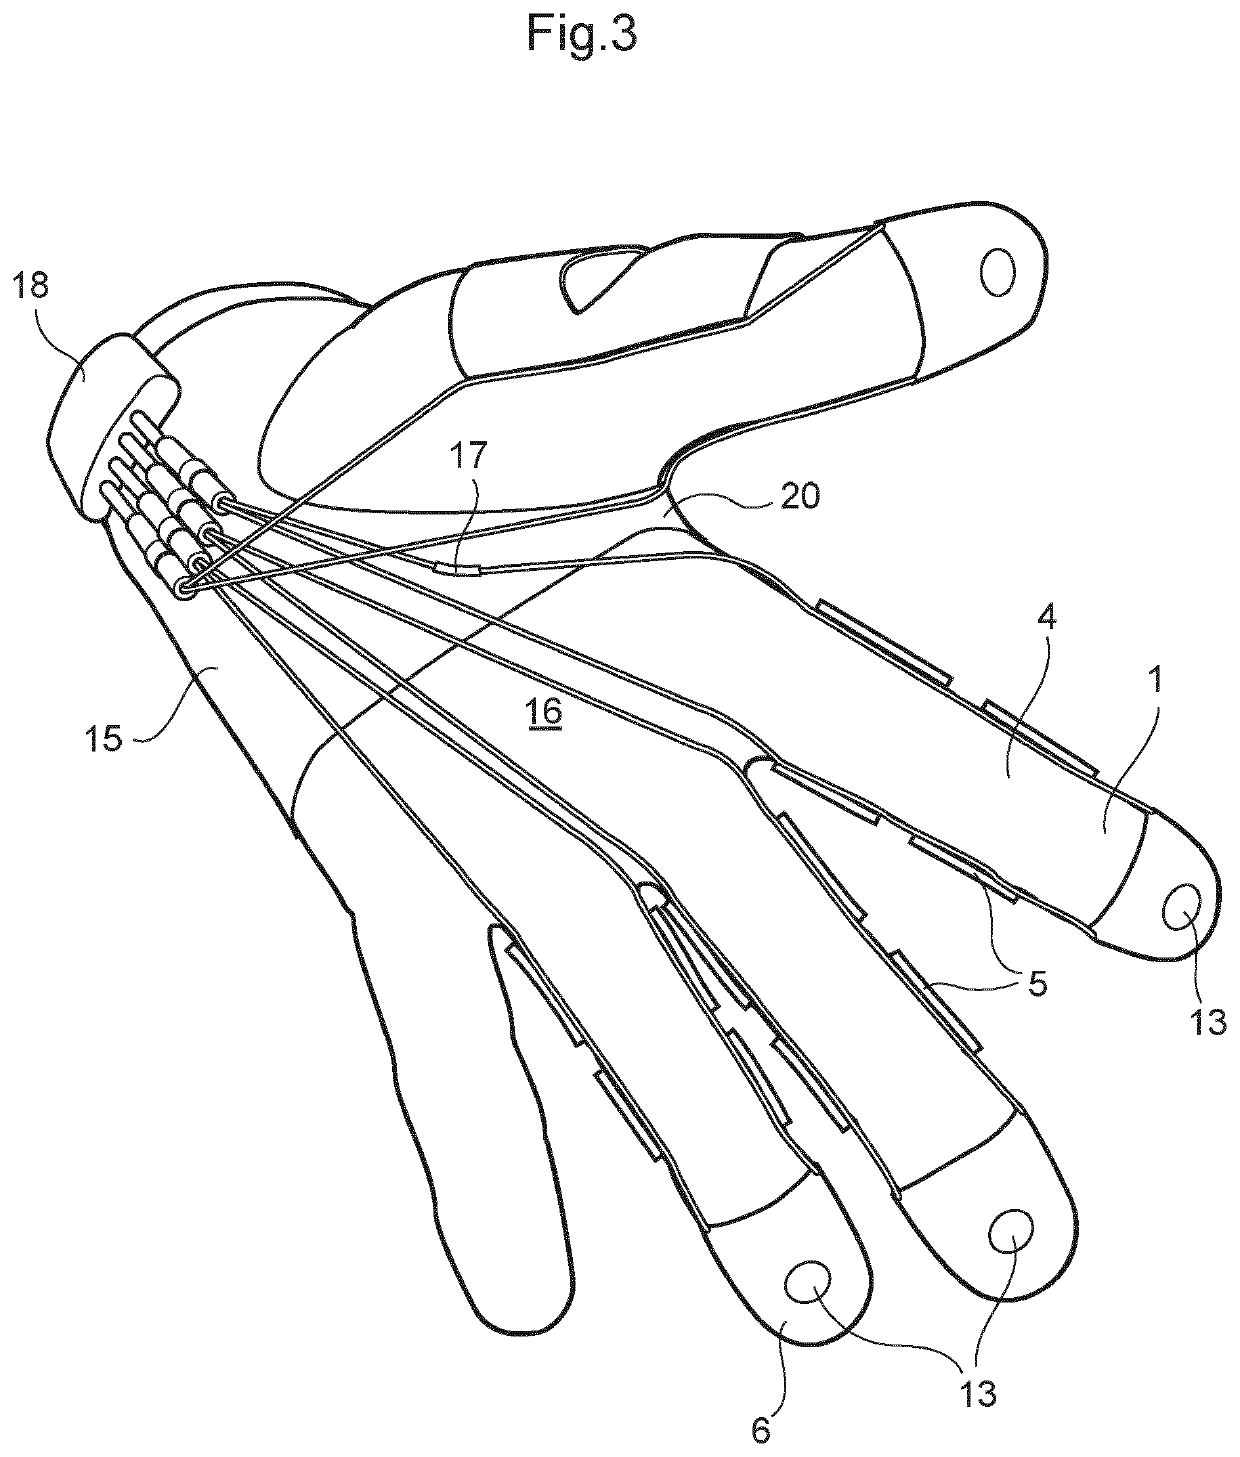 Finger glove liner and strengthening finger glove with liner